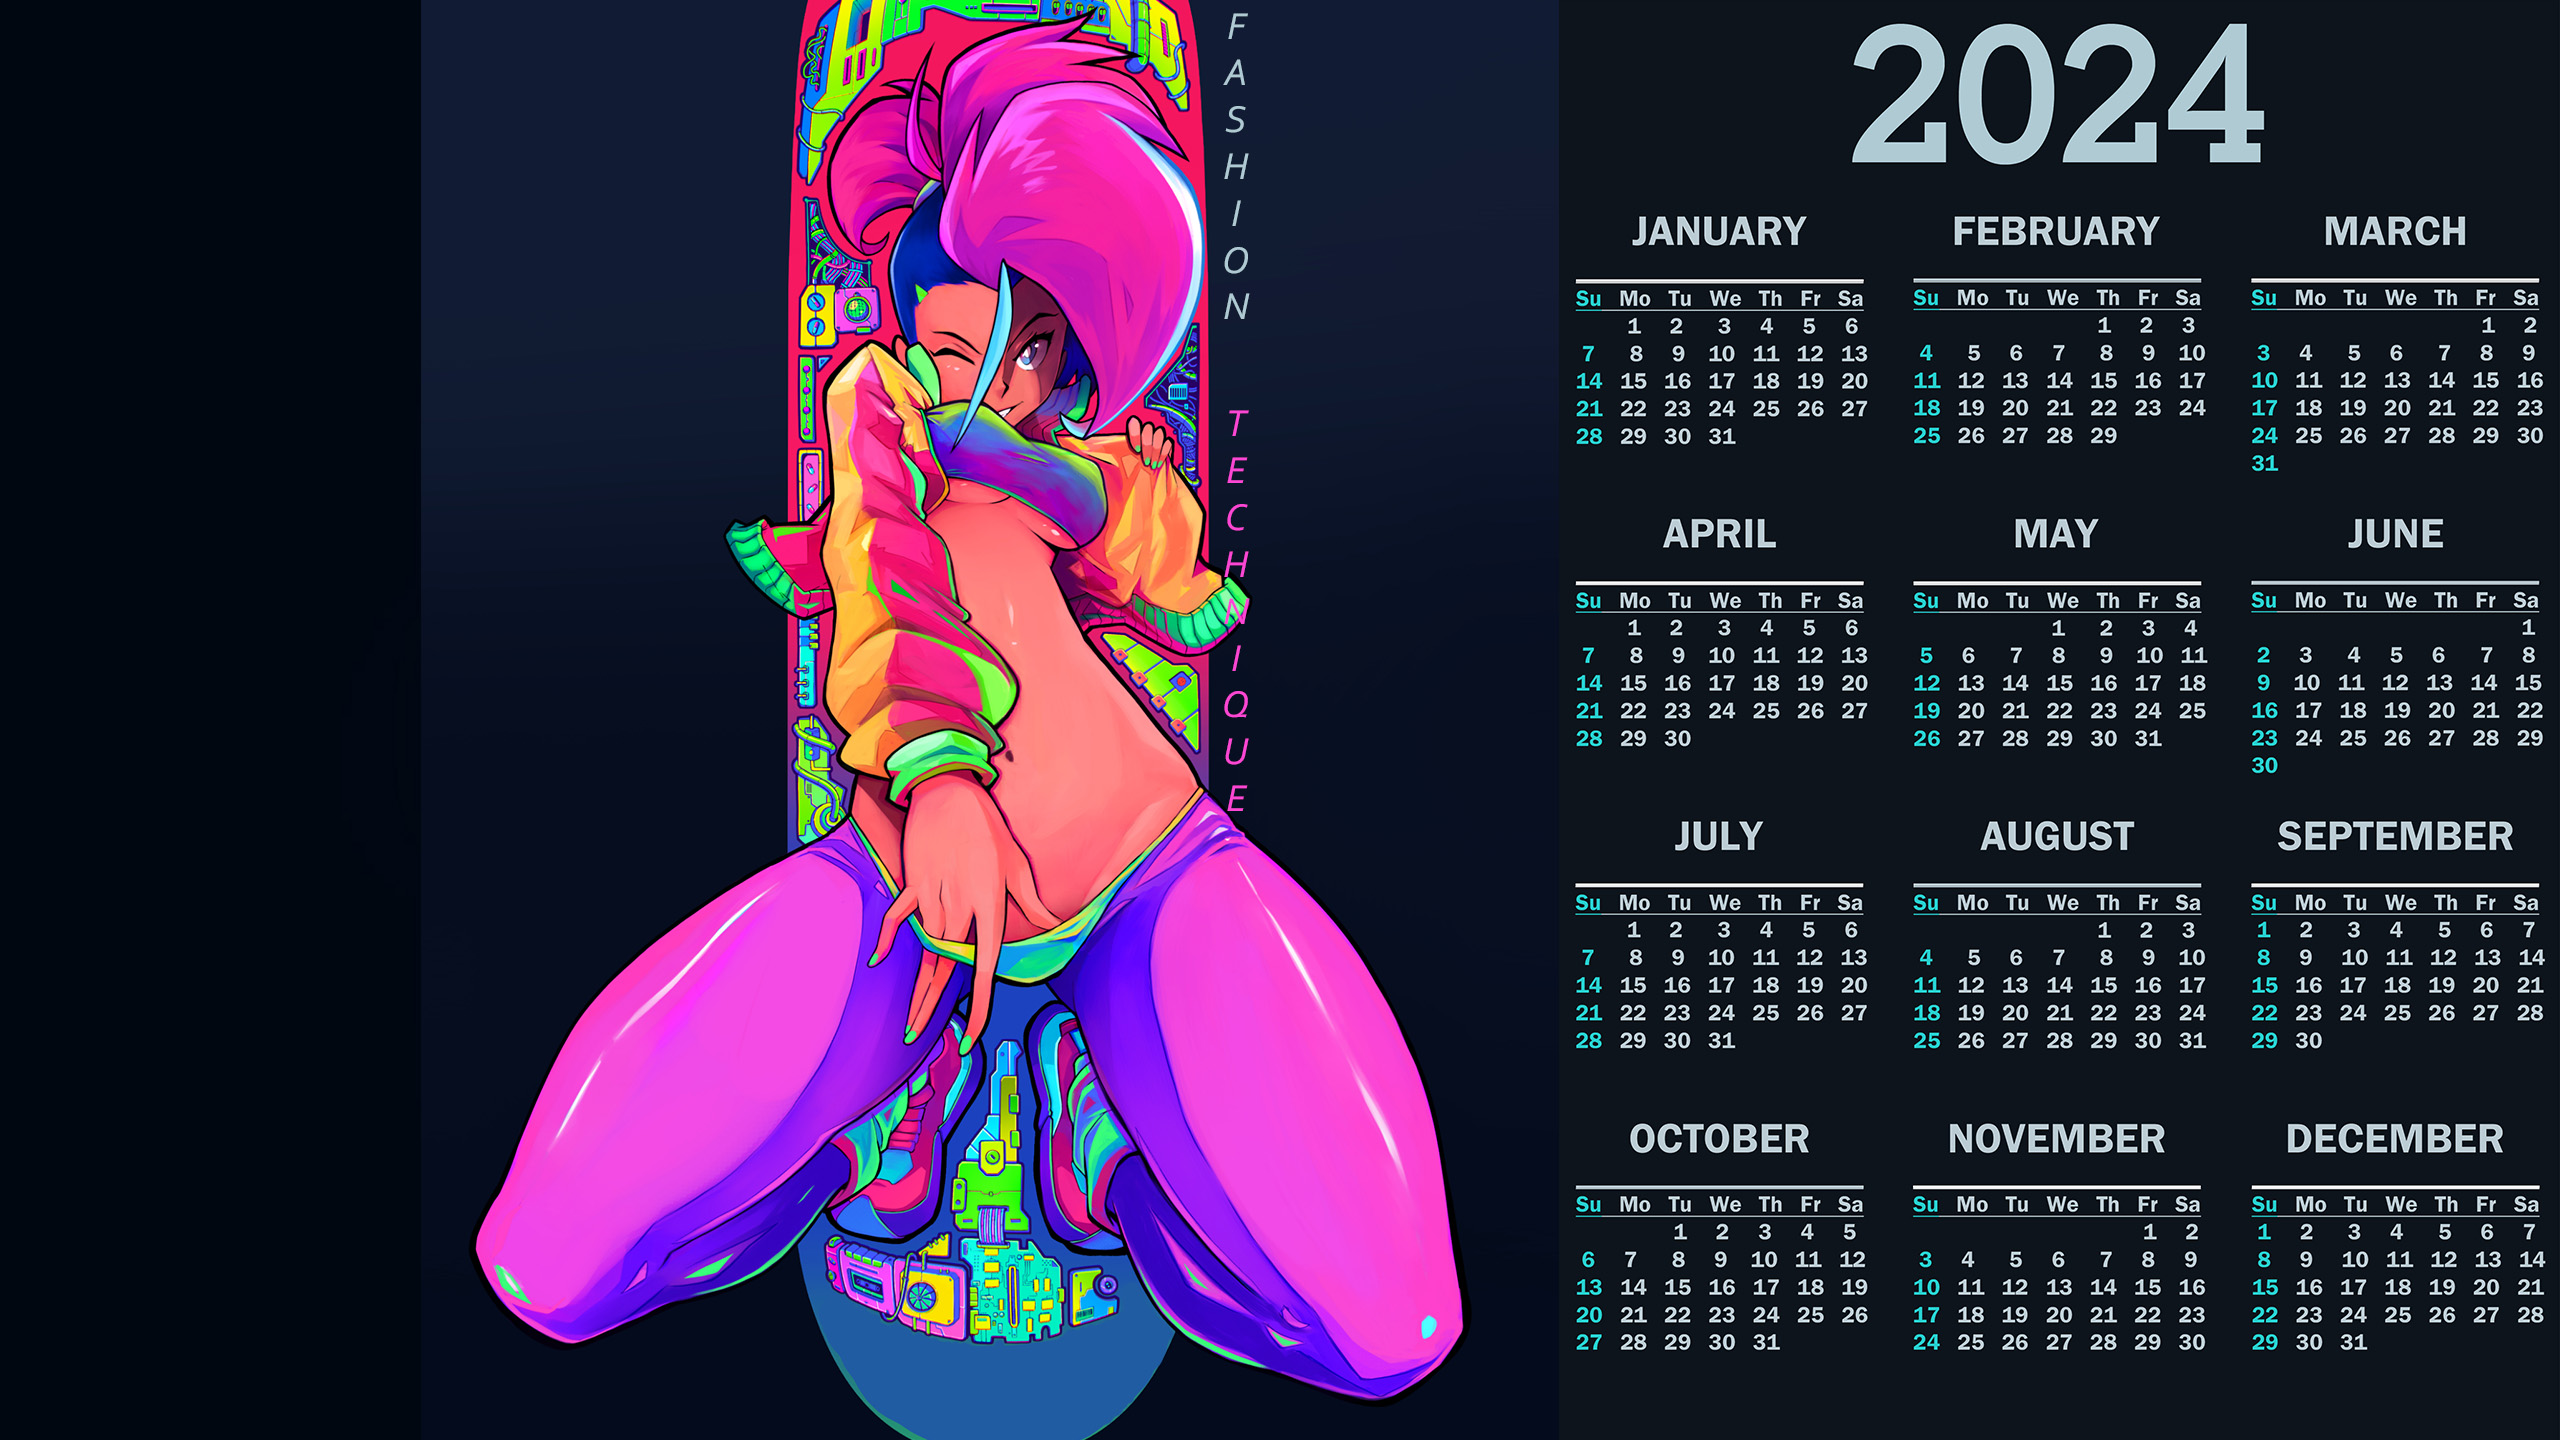 Fashion Technique 2024 Calendar (2560x1440).jpg